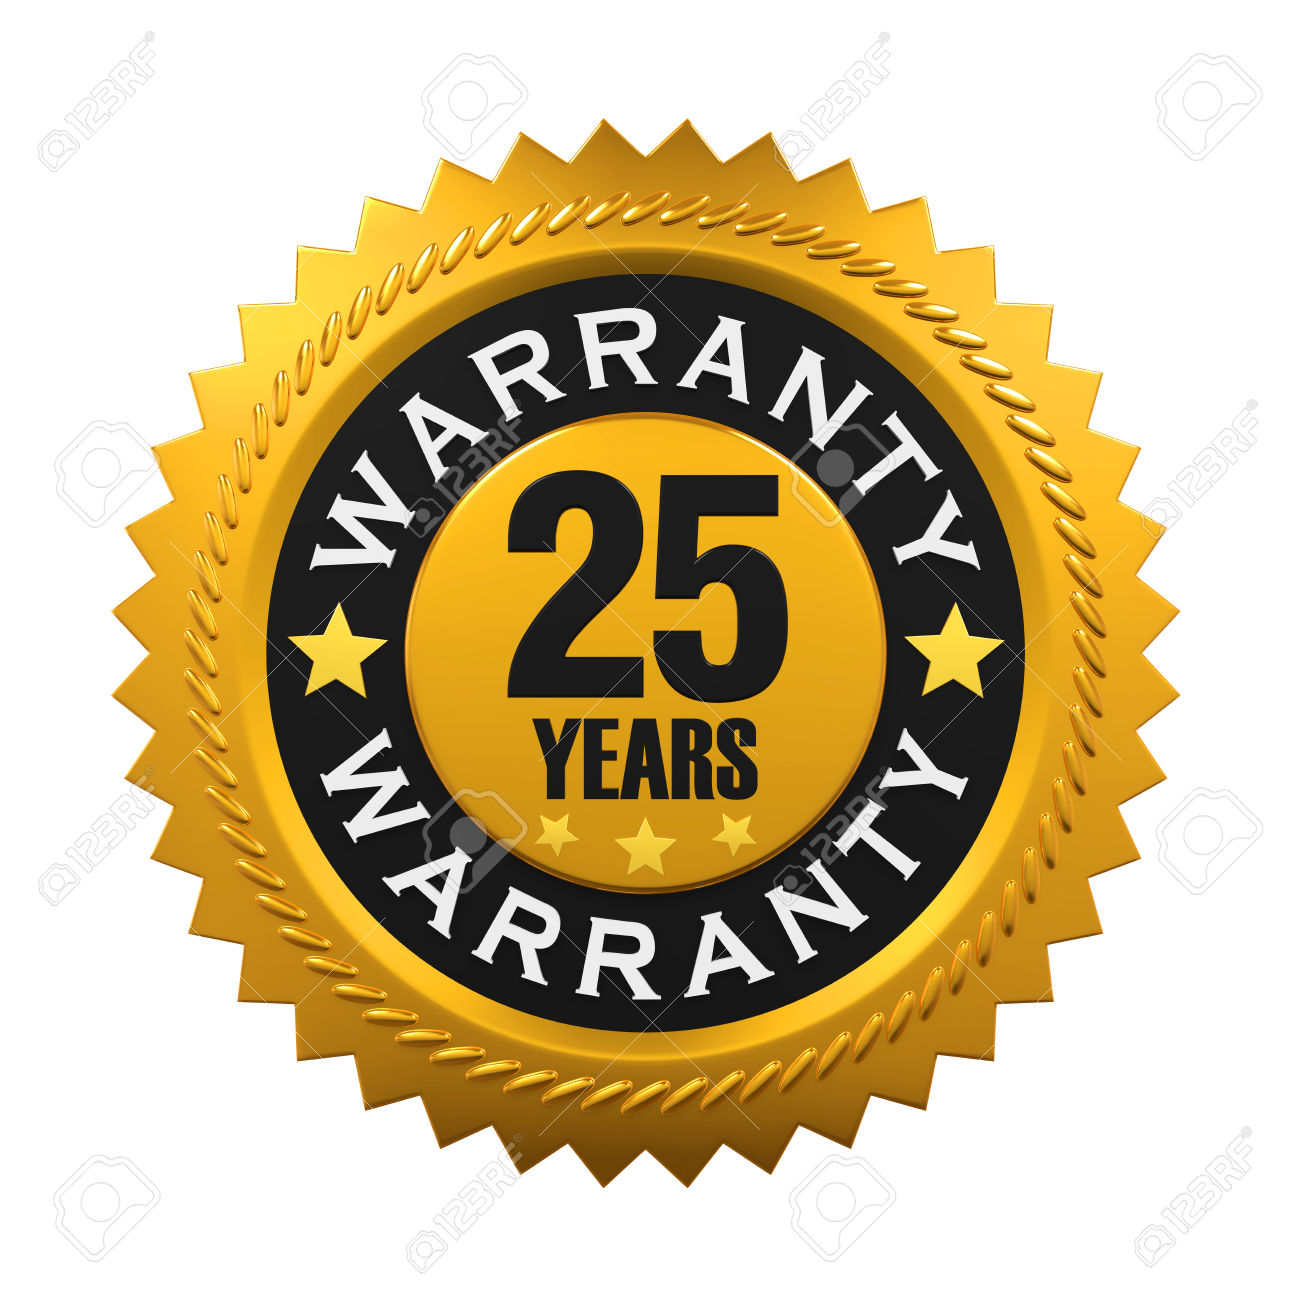 25-Years-Warranty.jpg